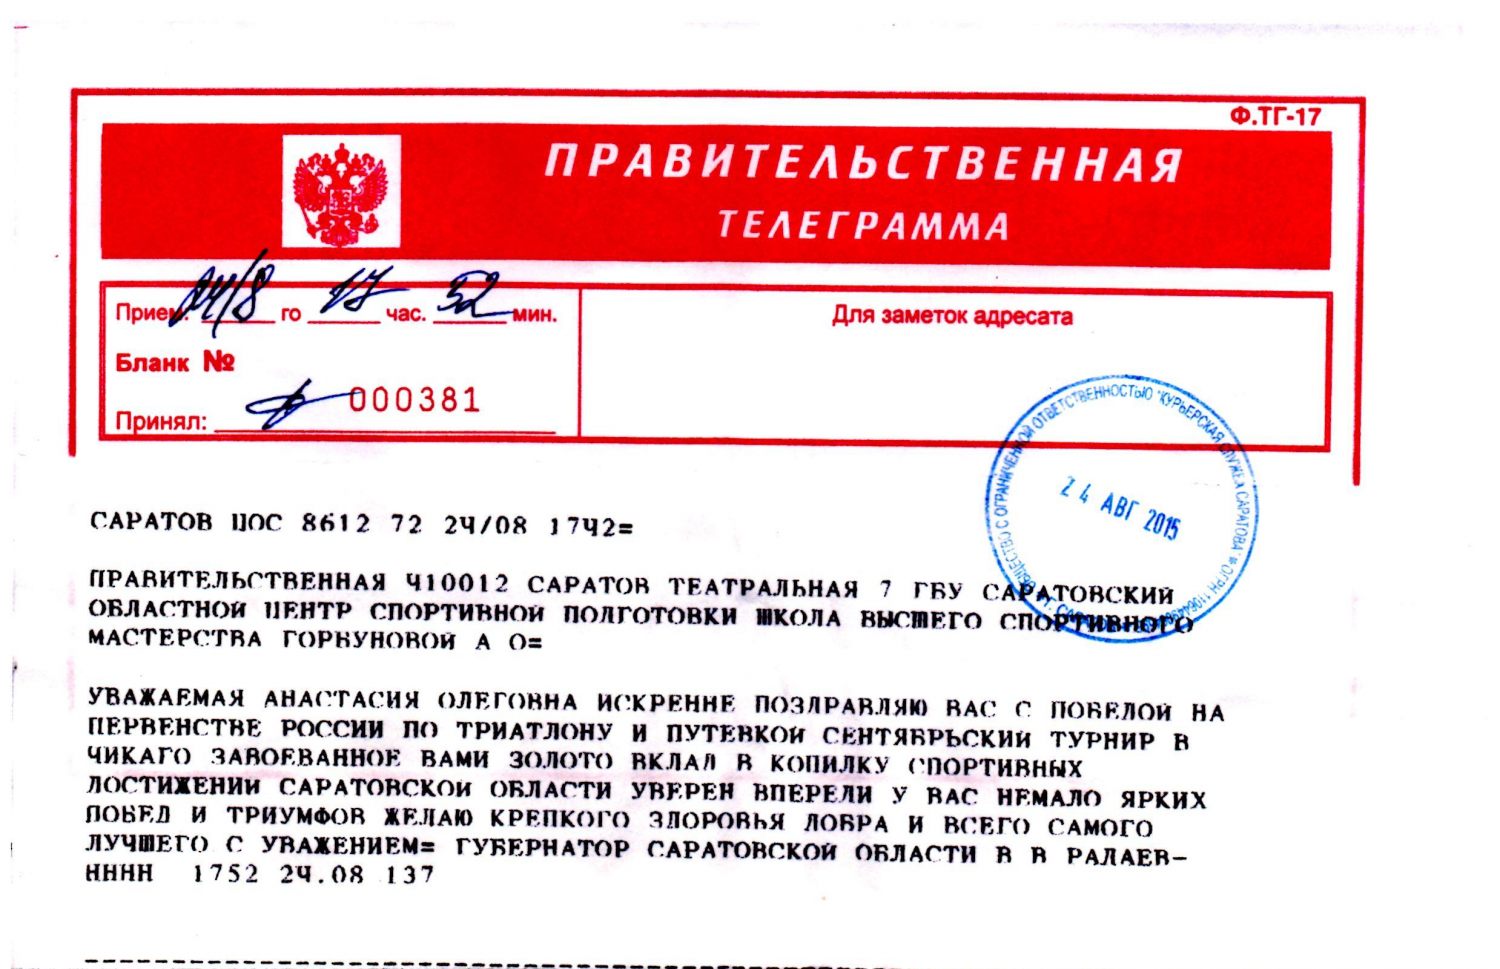 Телеграмма с телефона москва фото 114